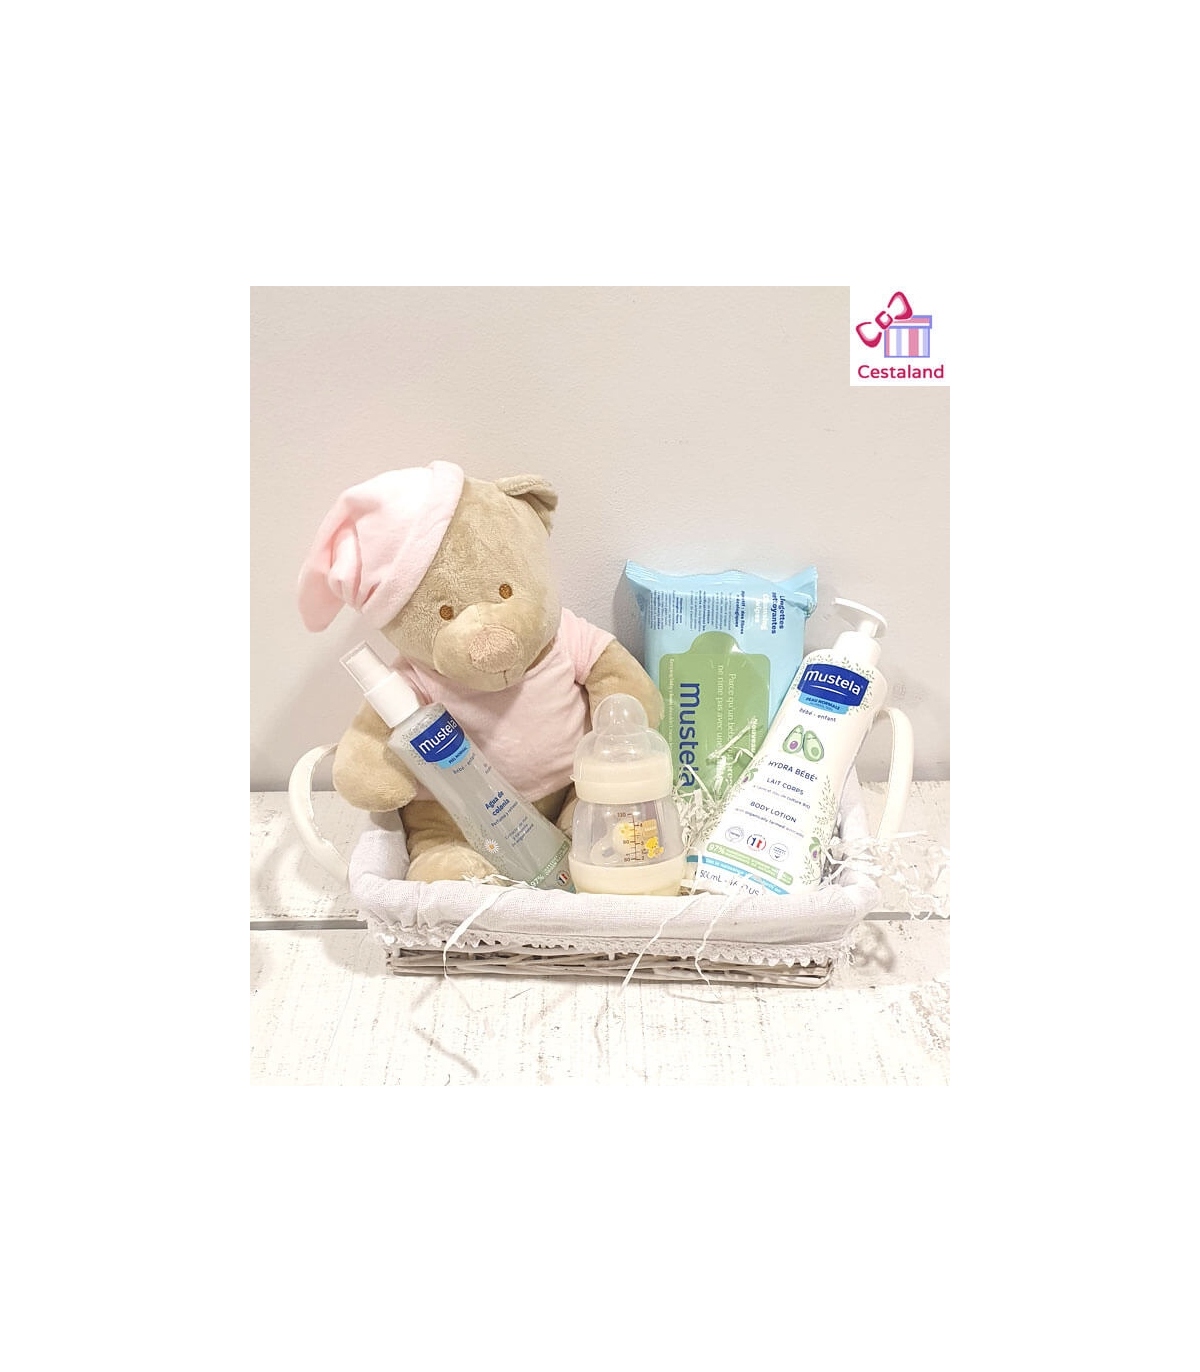 Canastilla para bebés mustela personalizable con oso peluche bordado